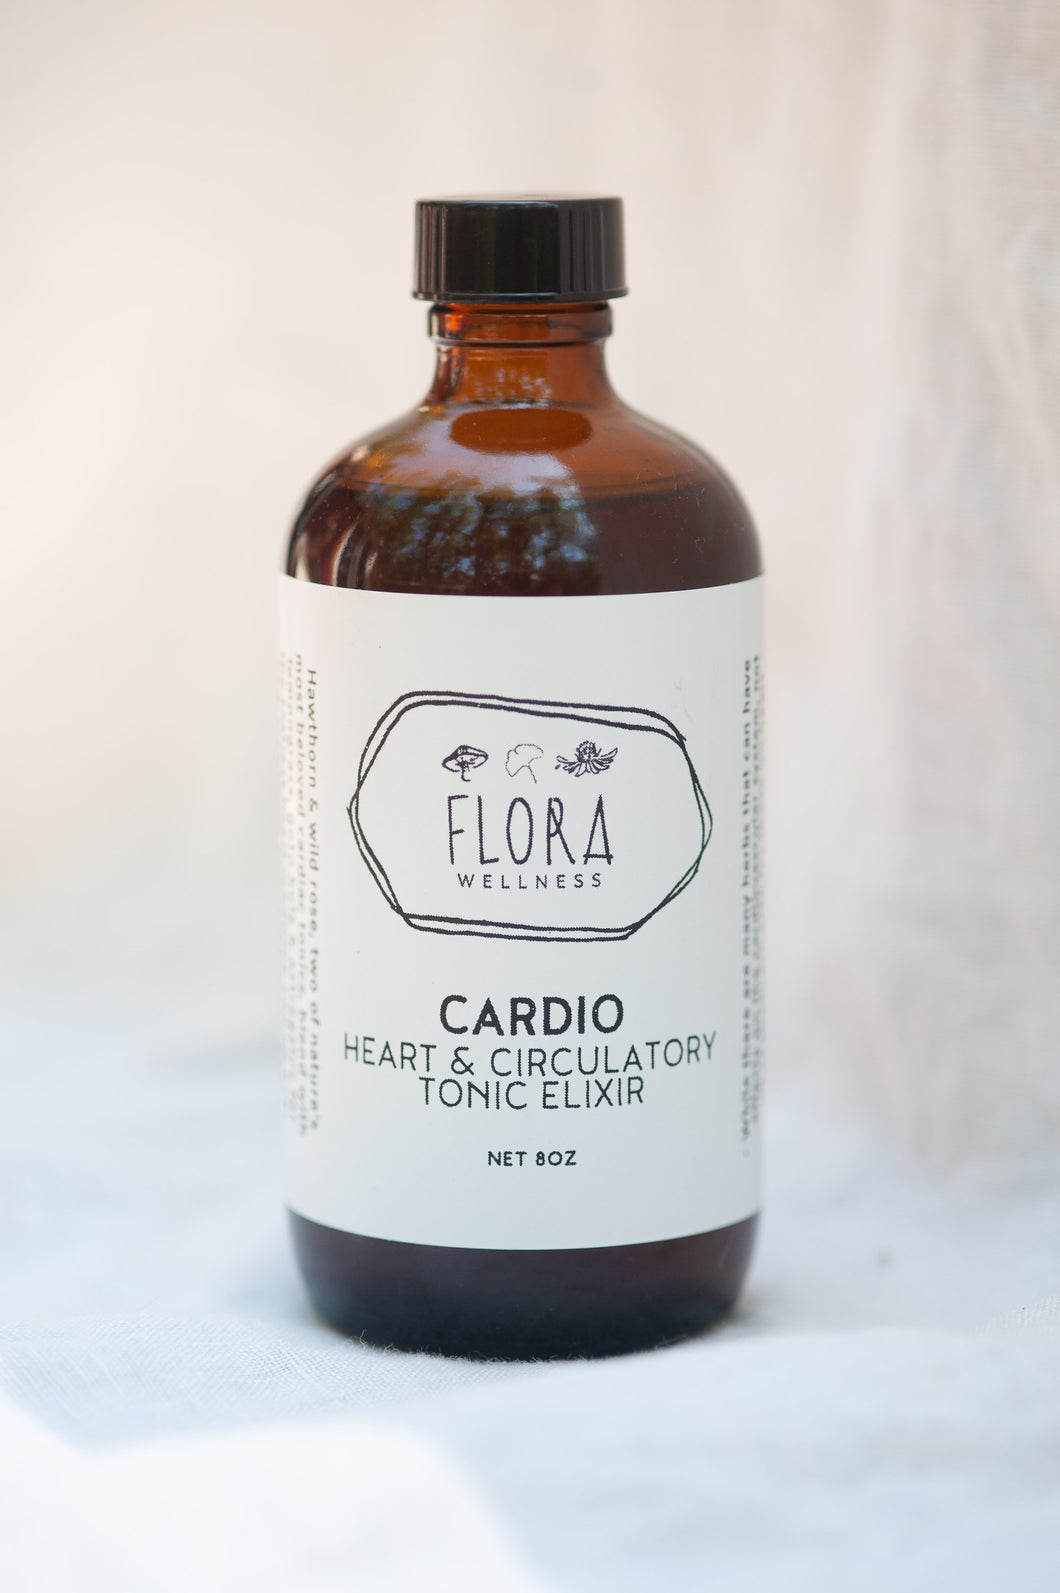 Cardio Heart & Circulatory Tonic Elixir